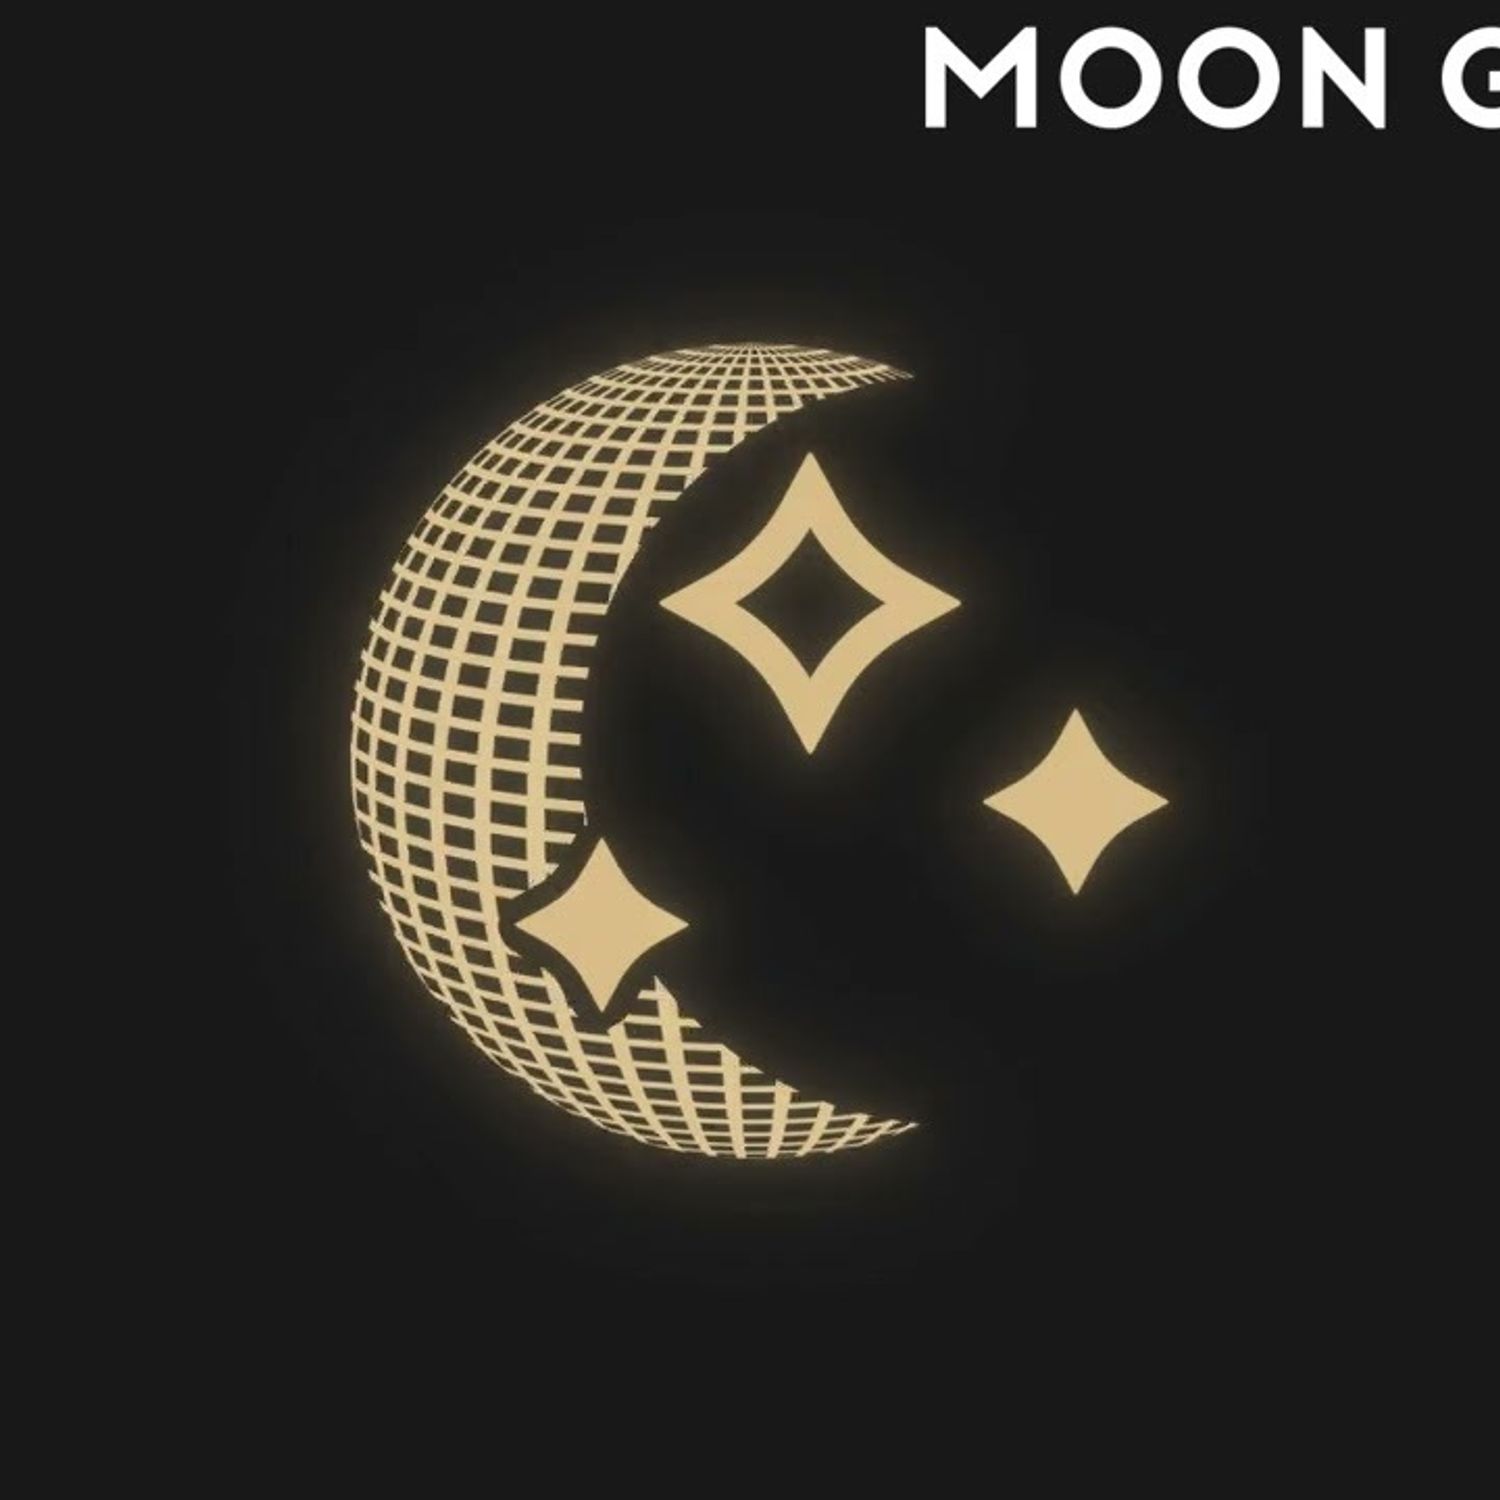 Moon Groove de Noizu à rajouter dans votre playlist de l’été !